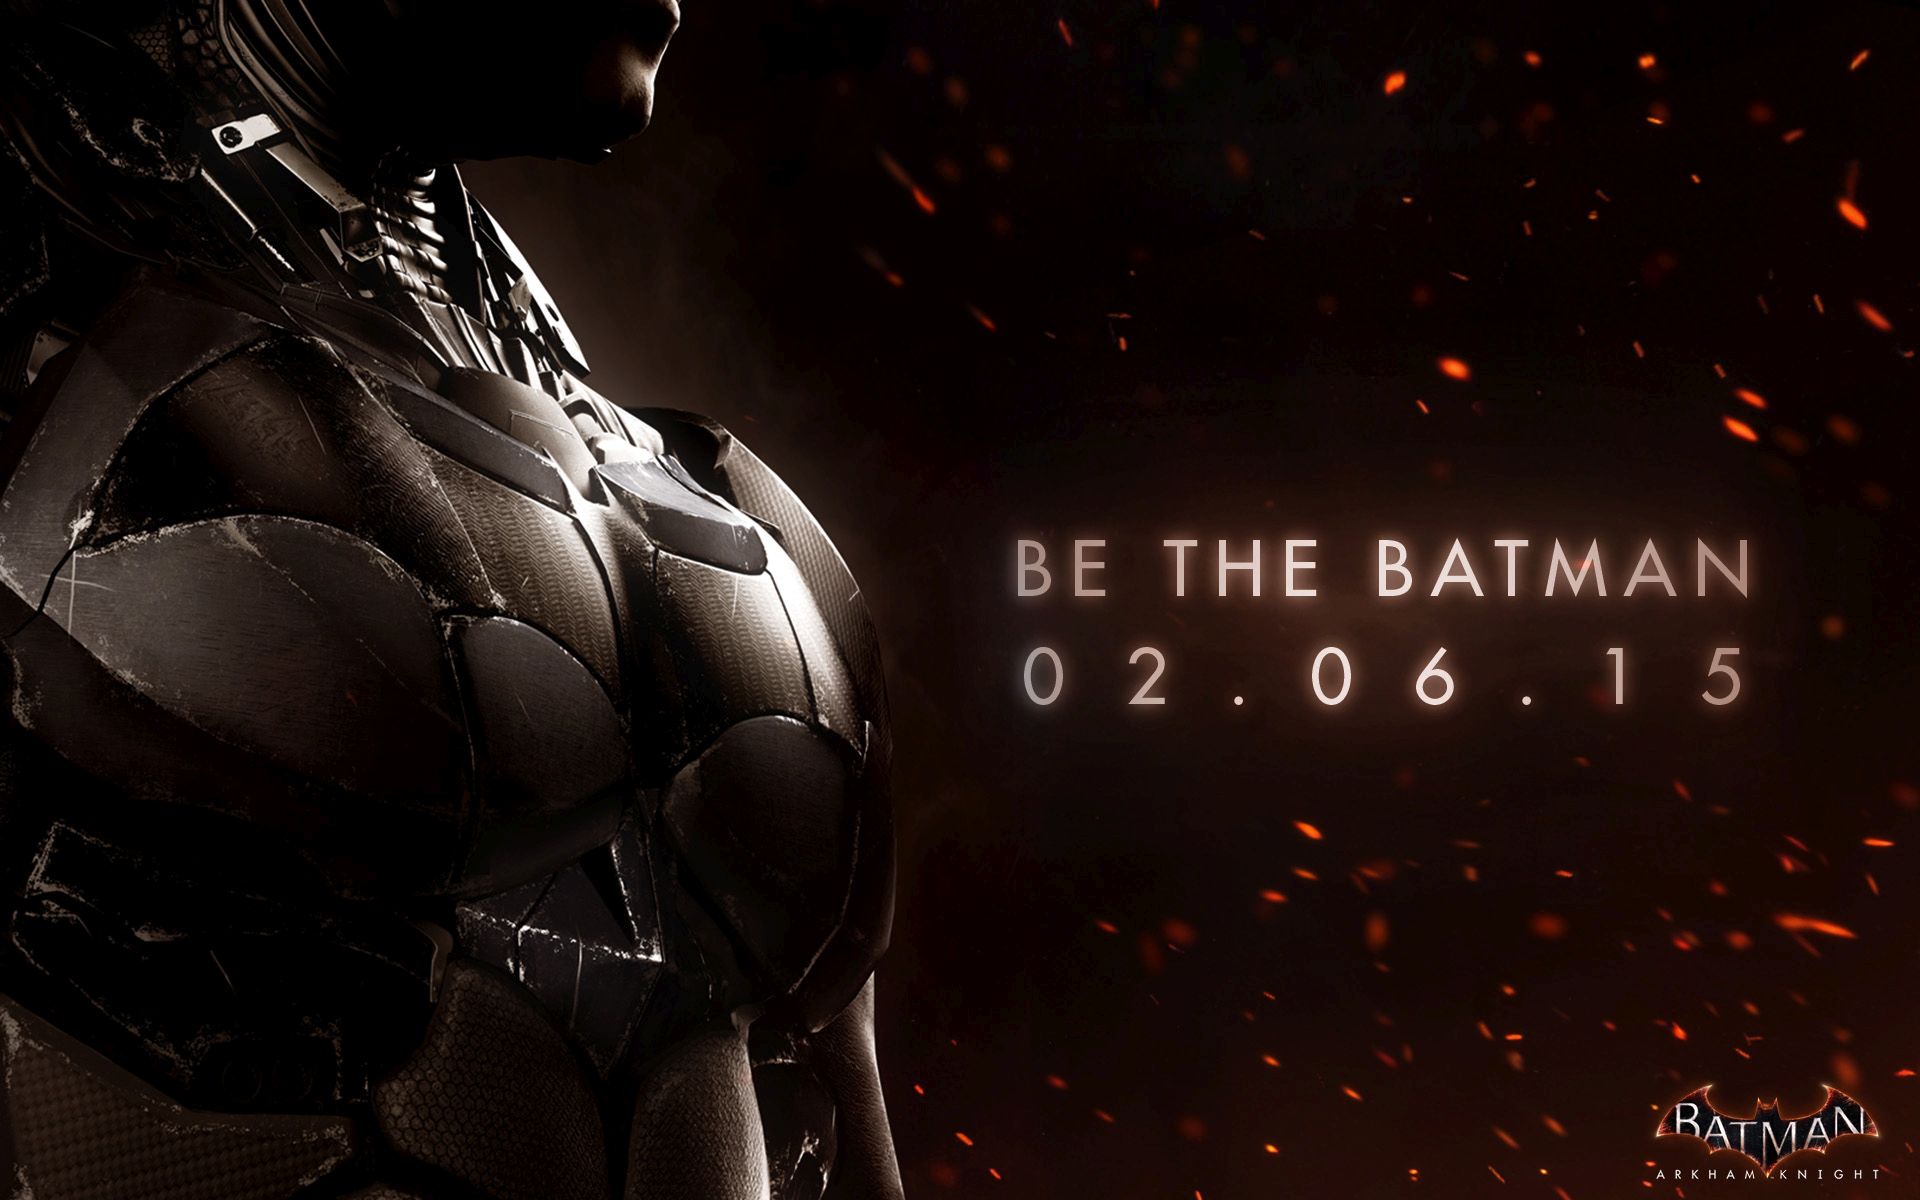 Batman: Arkham Knight – Neuer Live-Action-Trailer „Be the Batman“ veröffentlicht